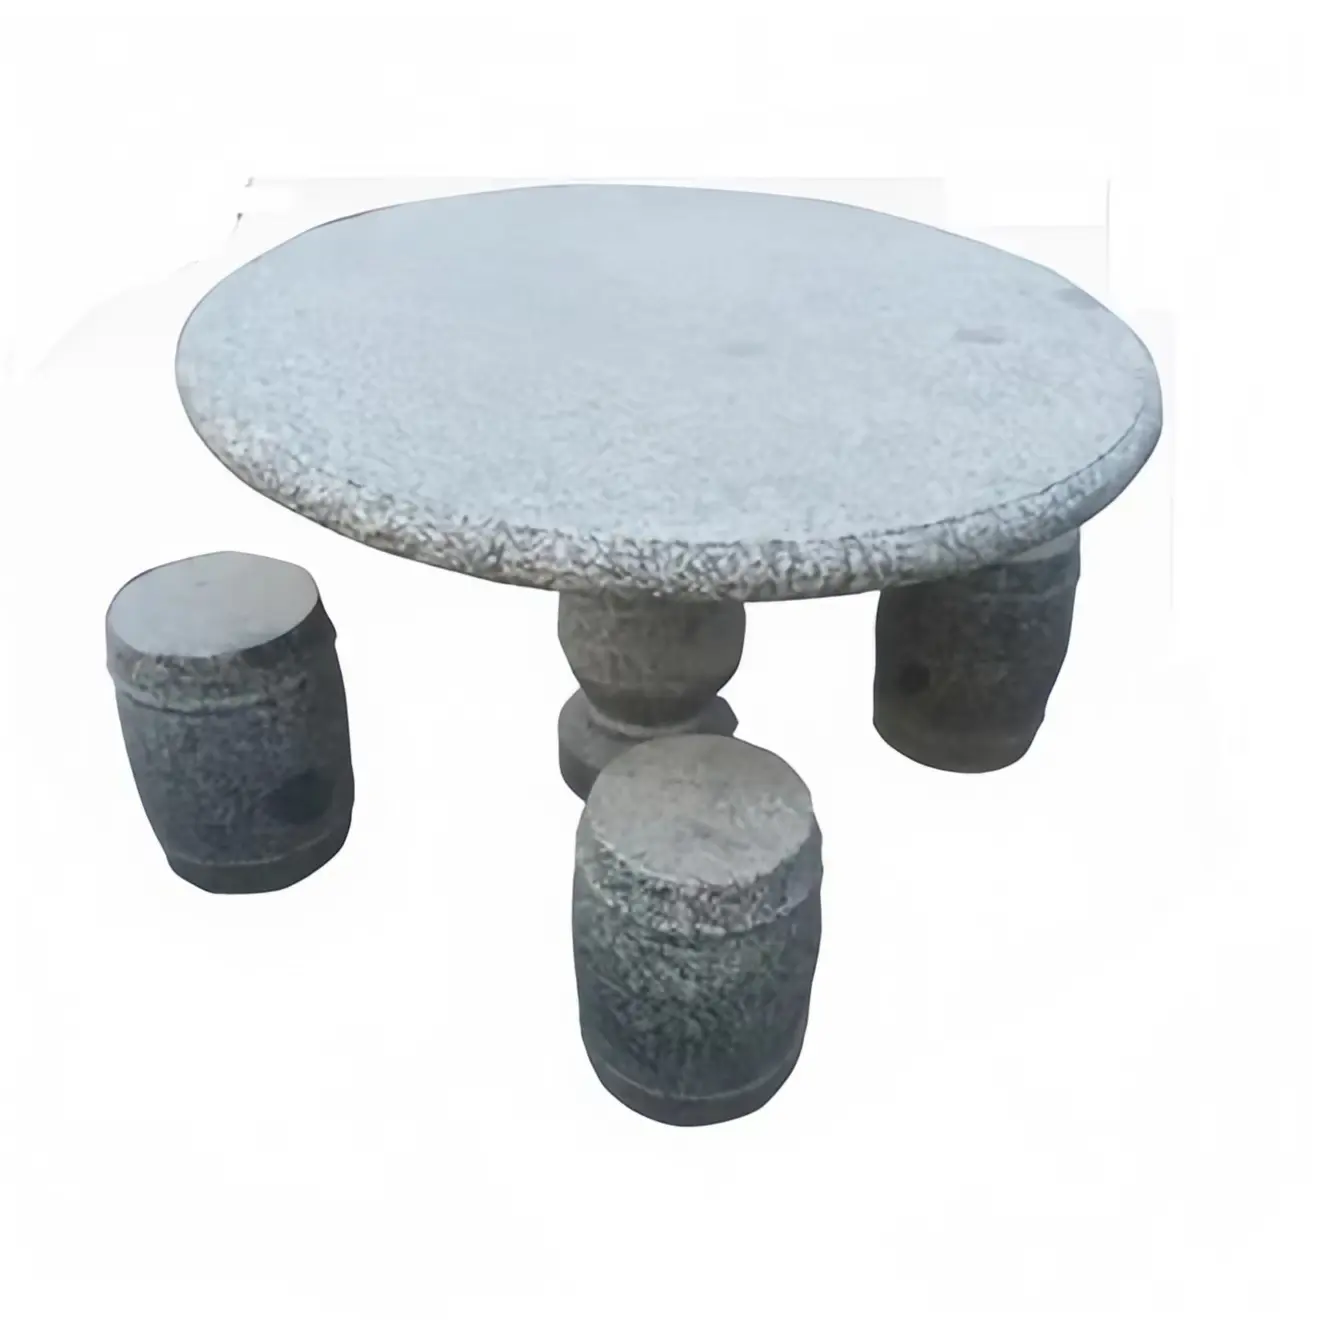 Оптовая продажа, открытый садовый каменный обеденный стол со скамейками и стульями, садовые украшения, вырезанные вручную каменные столы